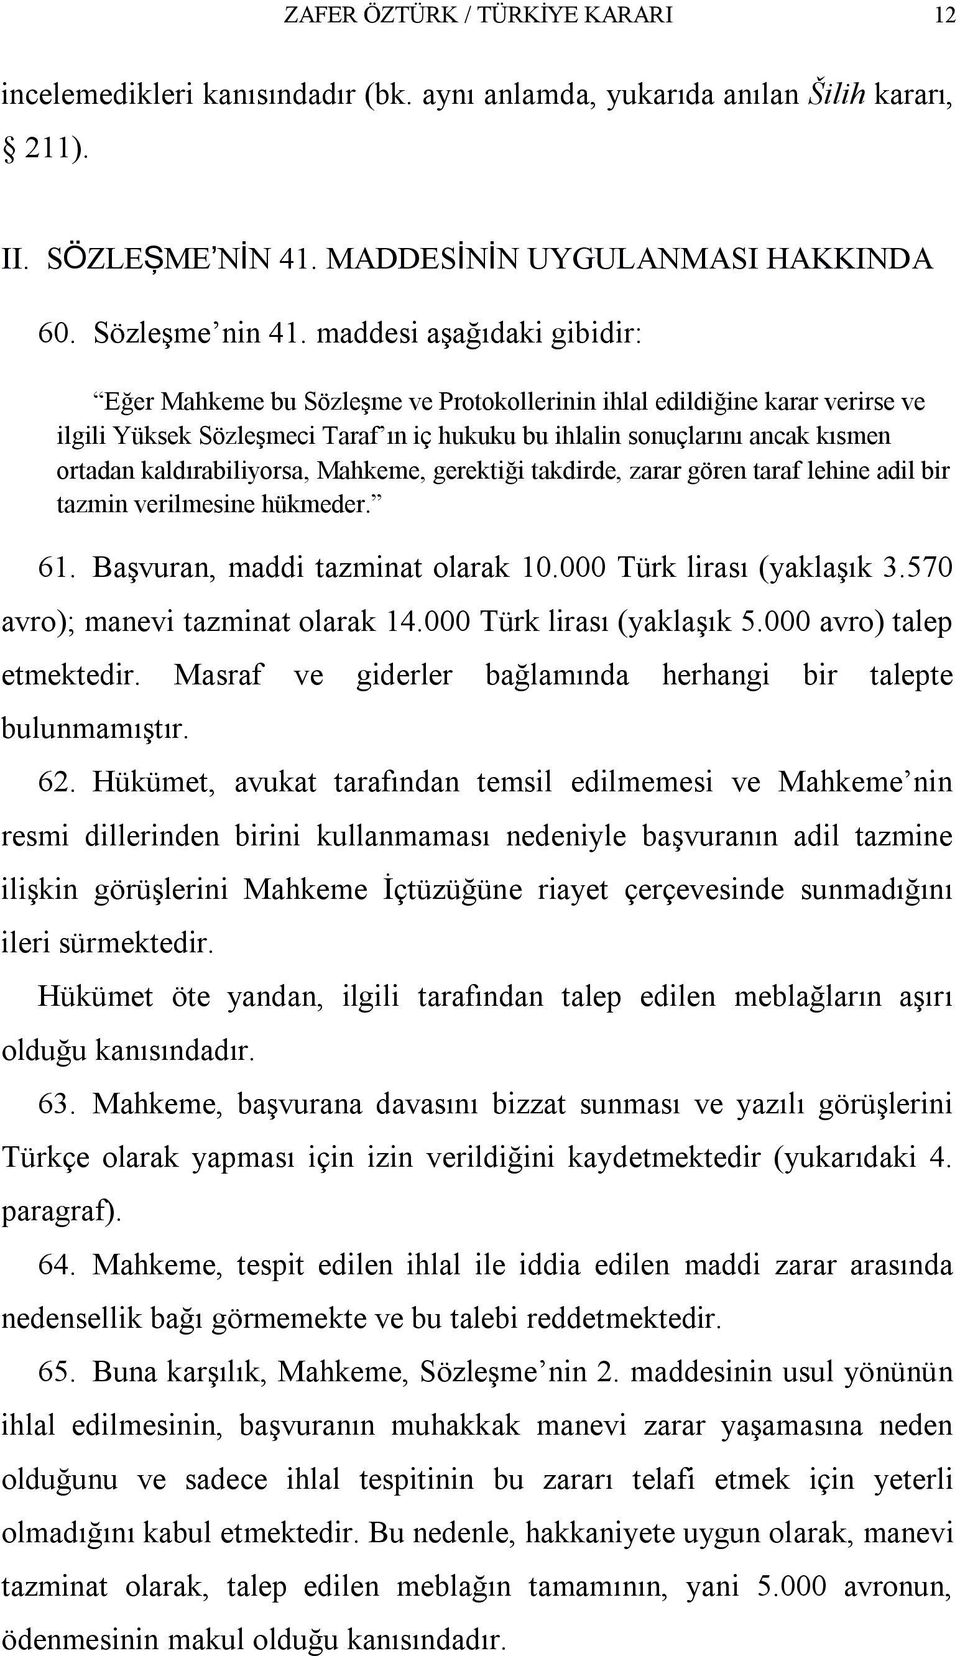 kaldırabiliyorsa, Mahkeme, gerektiği takdirde, zarar gören taraf lehine adil bir tazmin verilmesine hükmeder. 61. Başvuran, maddi tazminat olarak 10.000 Türk lirası (yaklaşık 3.